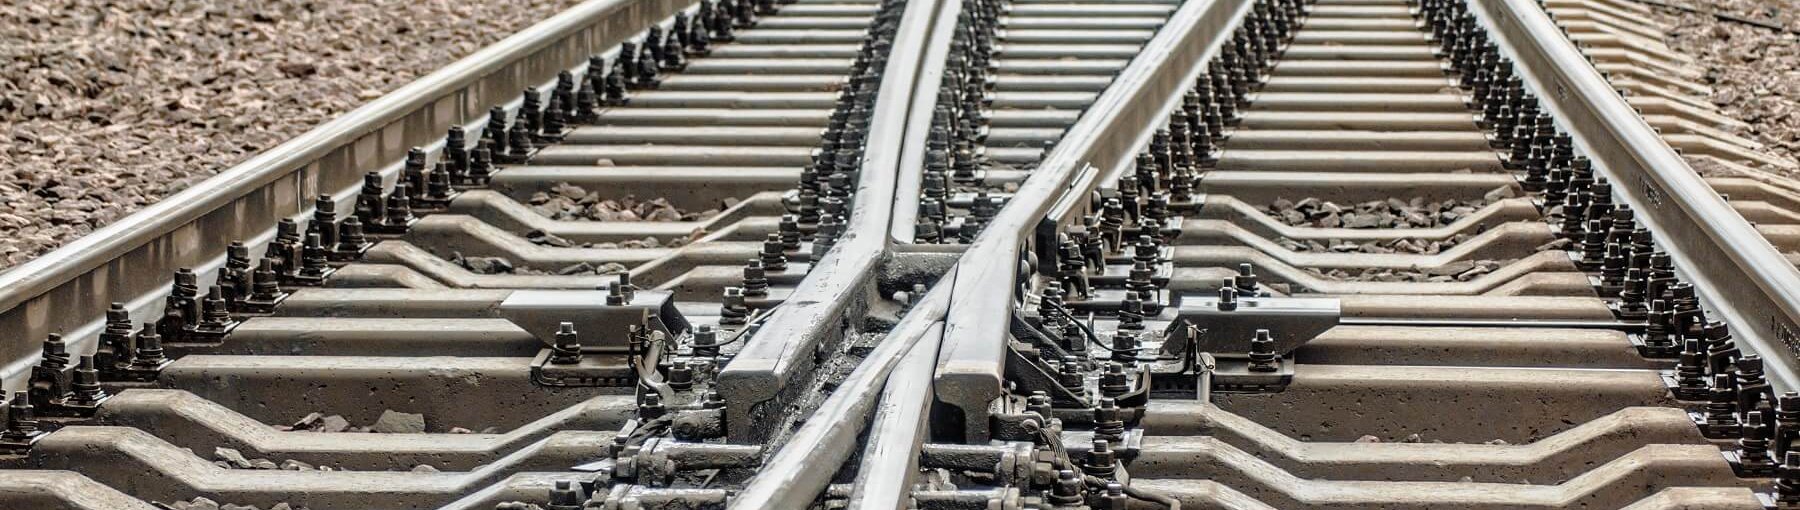 Co powoduje utrudnienia w budowie i modernizacji infrastruktury kolejowej? Fot. VMCgroup/Shutterstock